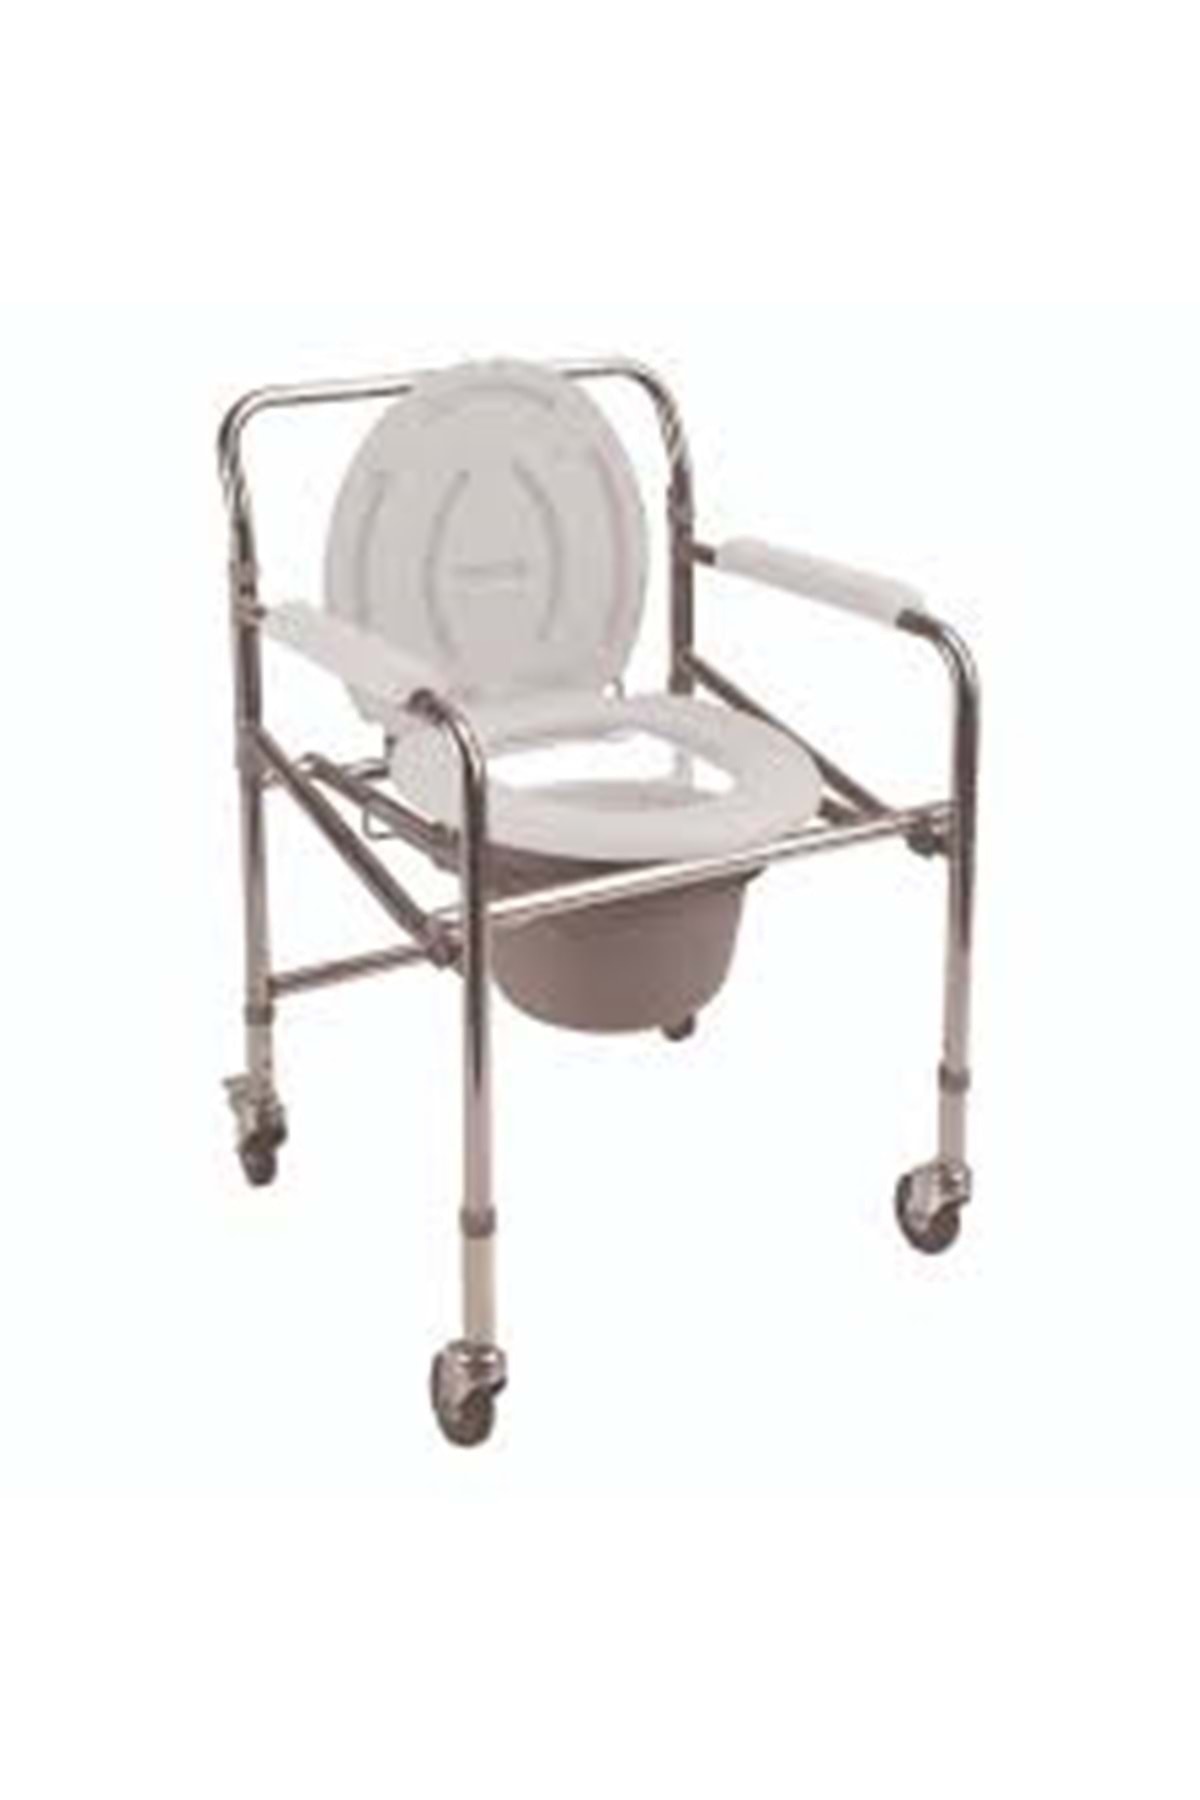 POYLİN Tuvaletli Tekerlekli Sandalye Komot P561